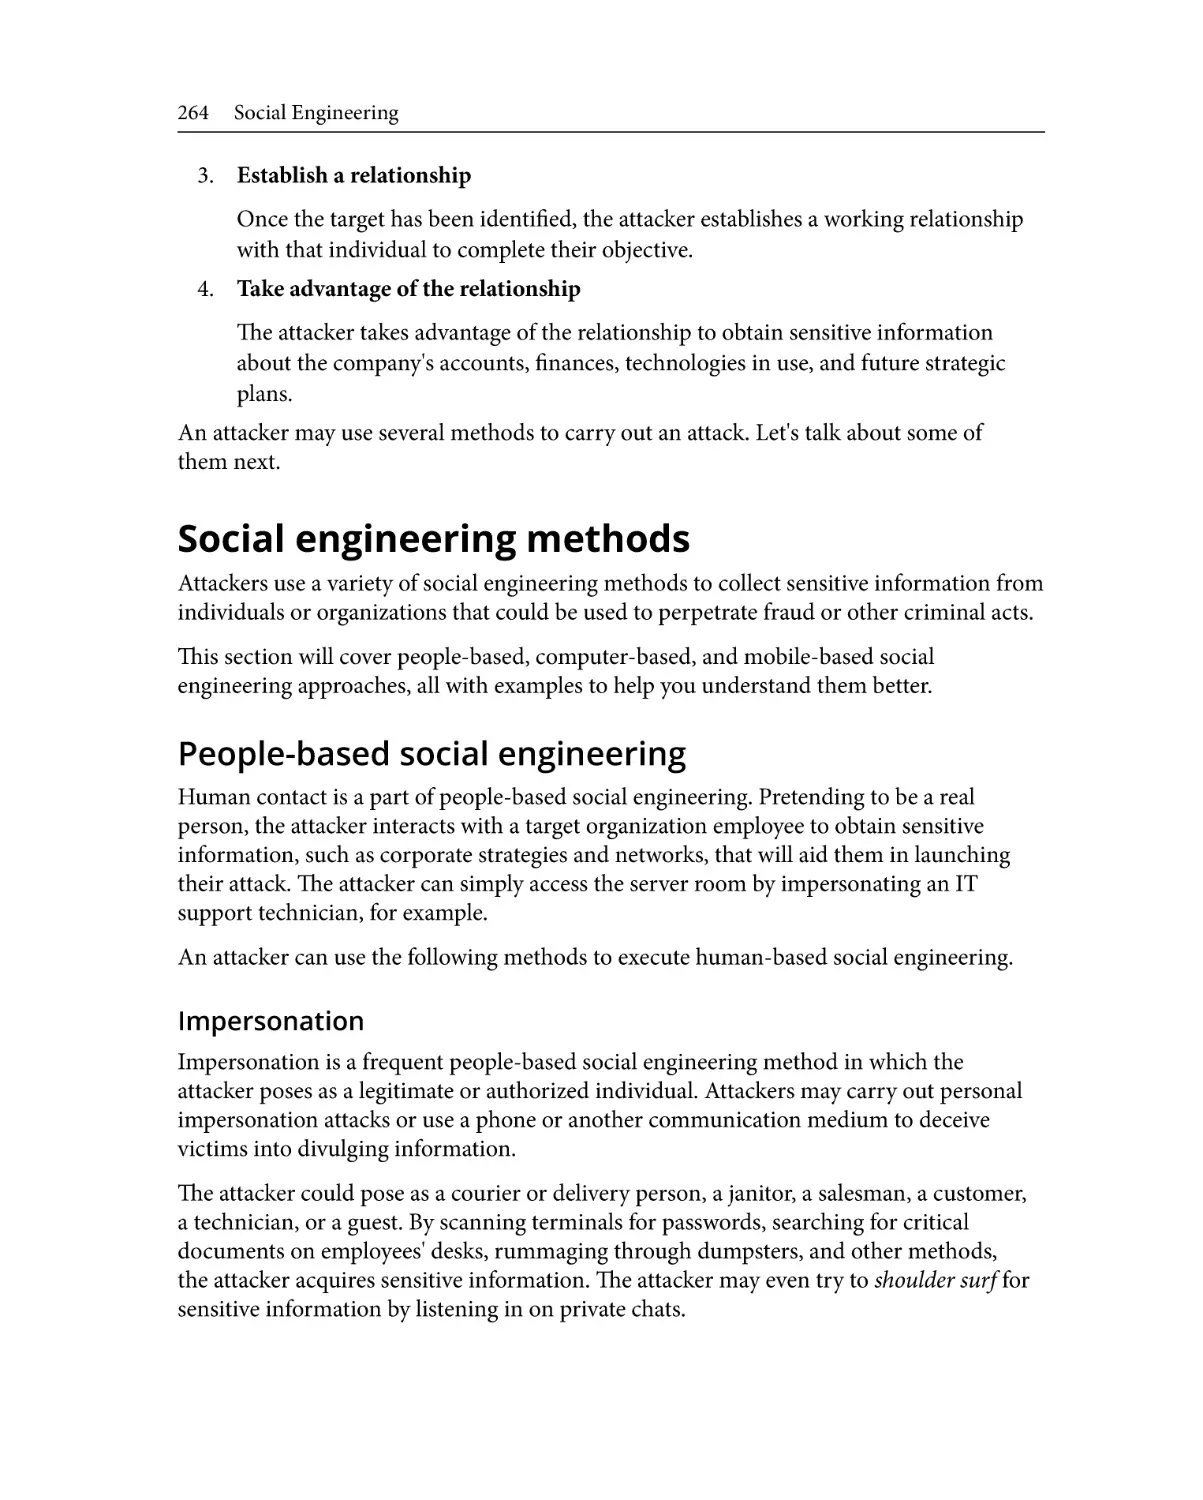 Social engineering methods
People-based social engineering